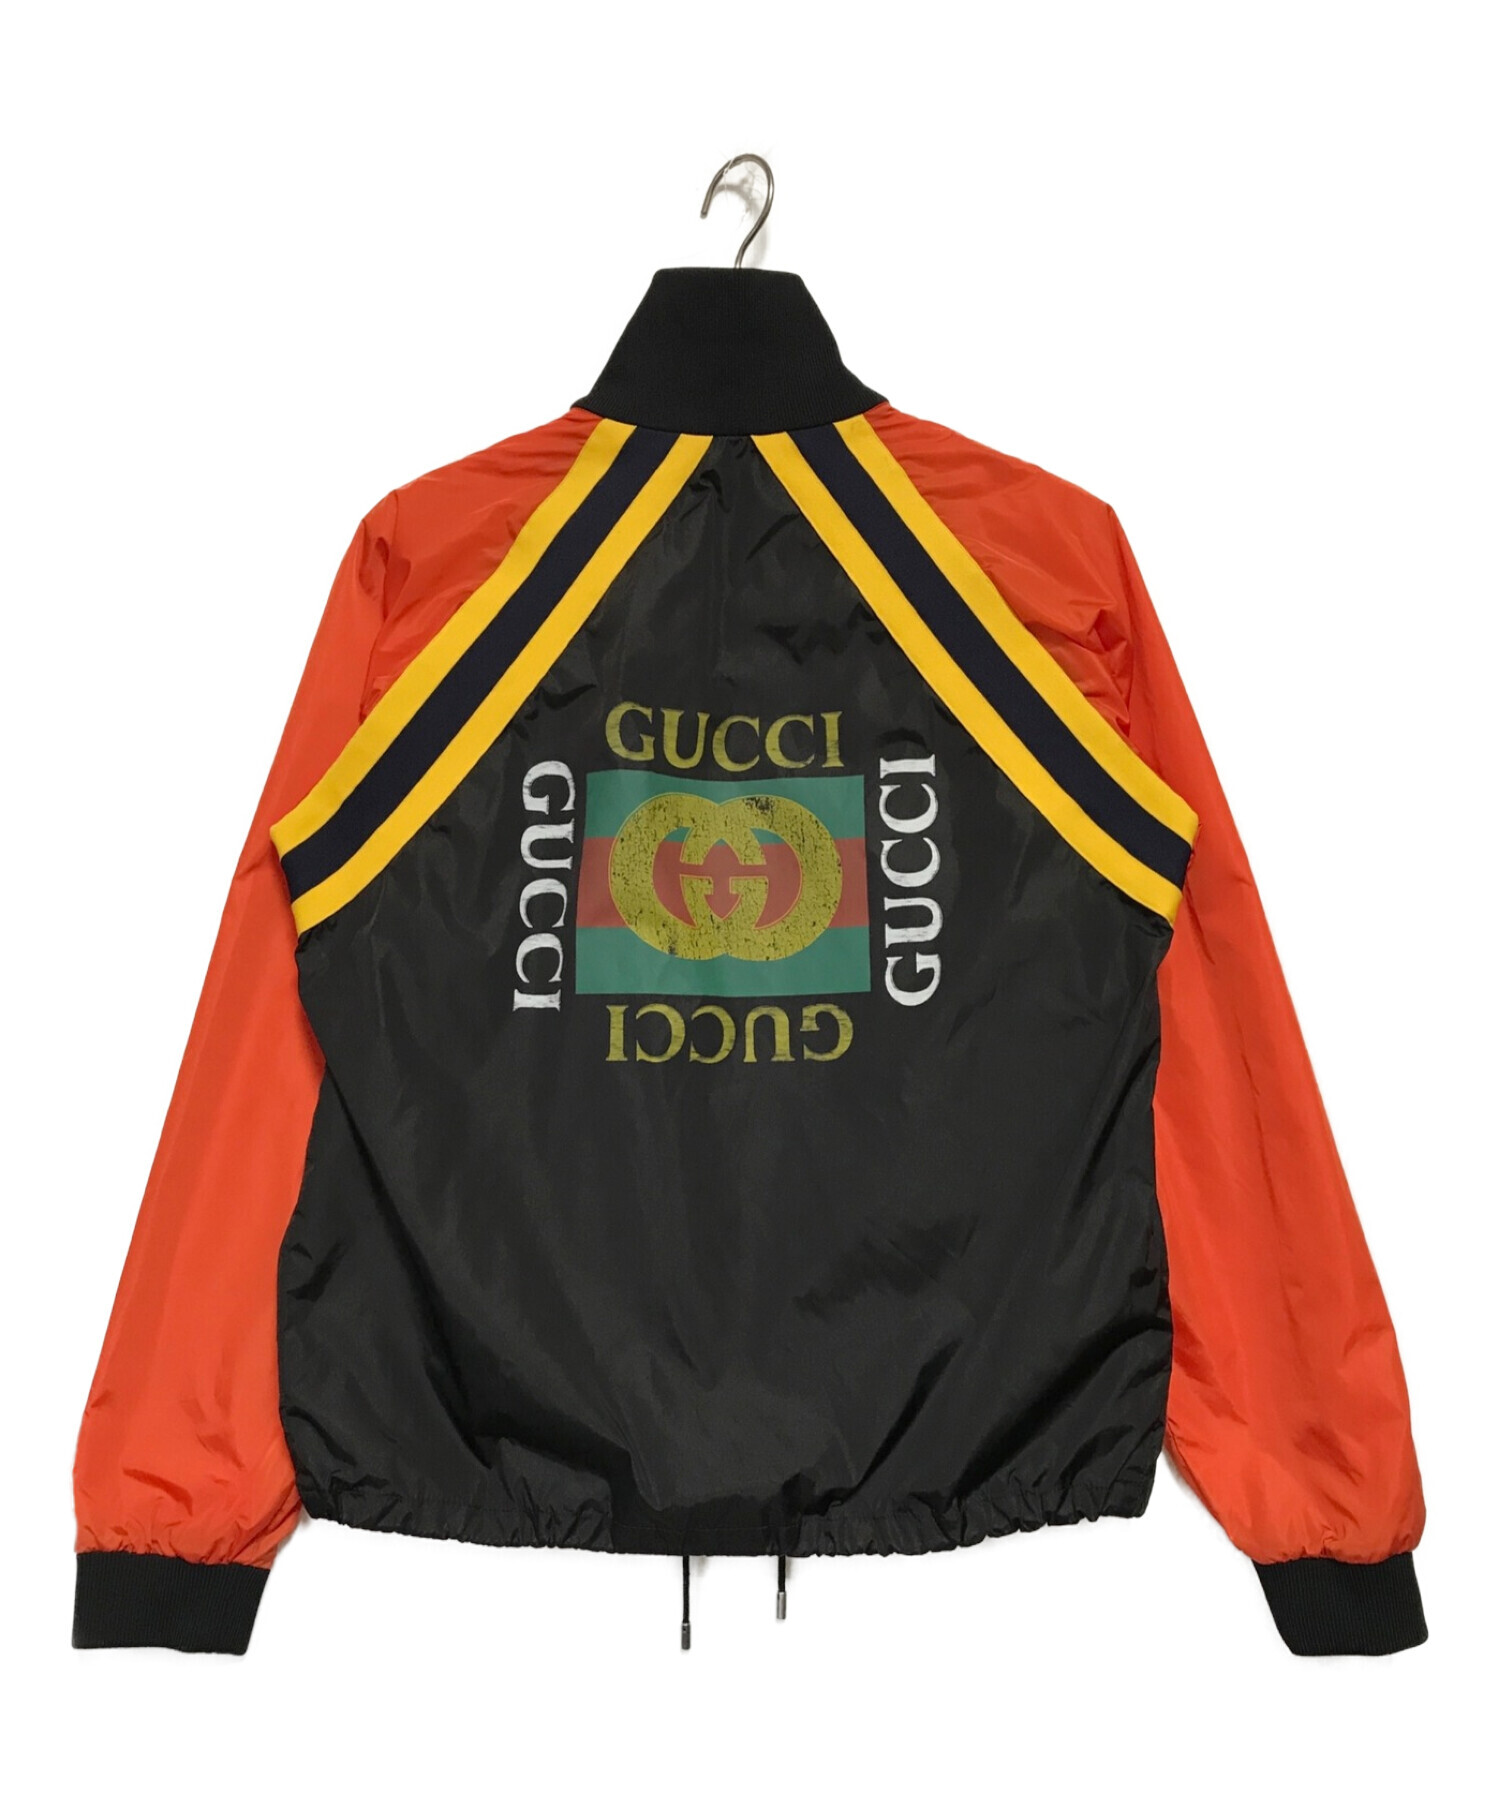 GUCCI (グッチ) ビンテージロゴナイロントラックジャケット オレンジ×ブラック サイズ:SIZE 46